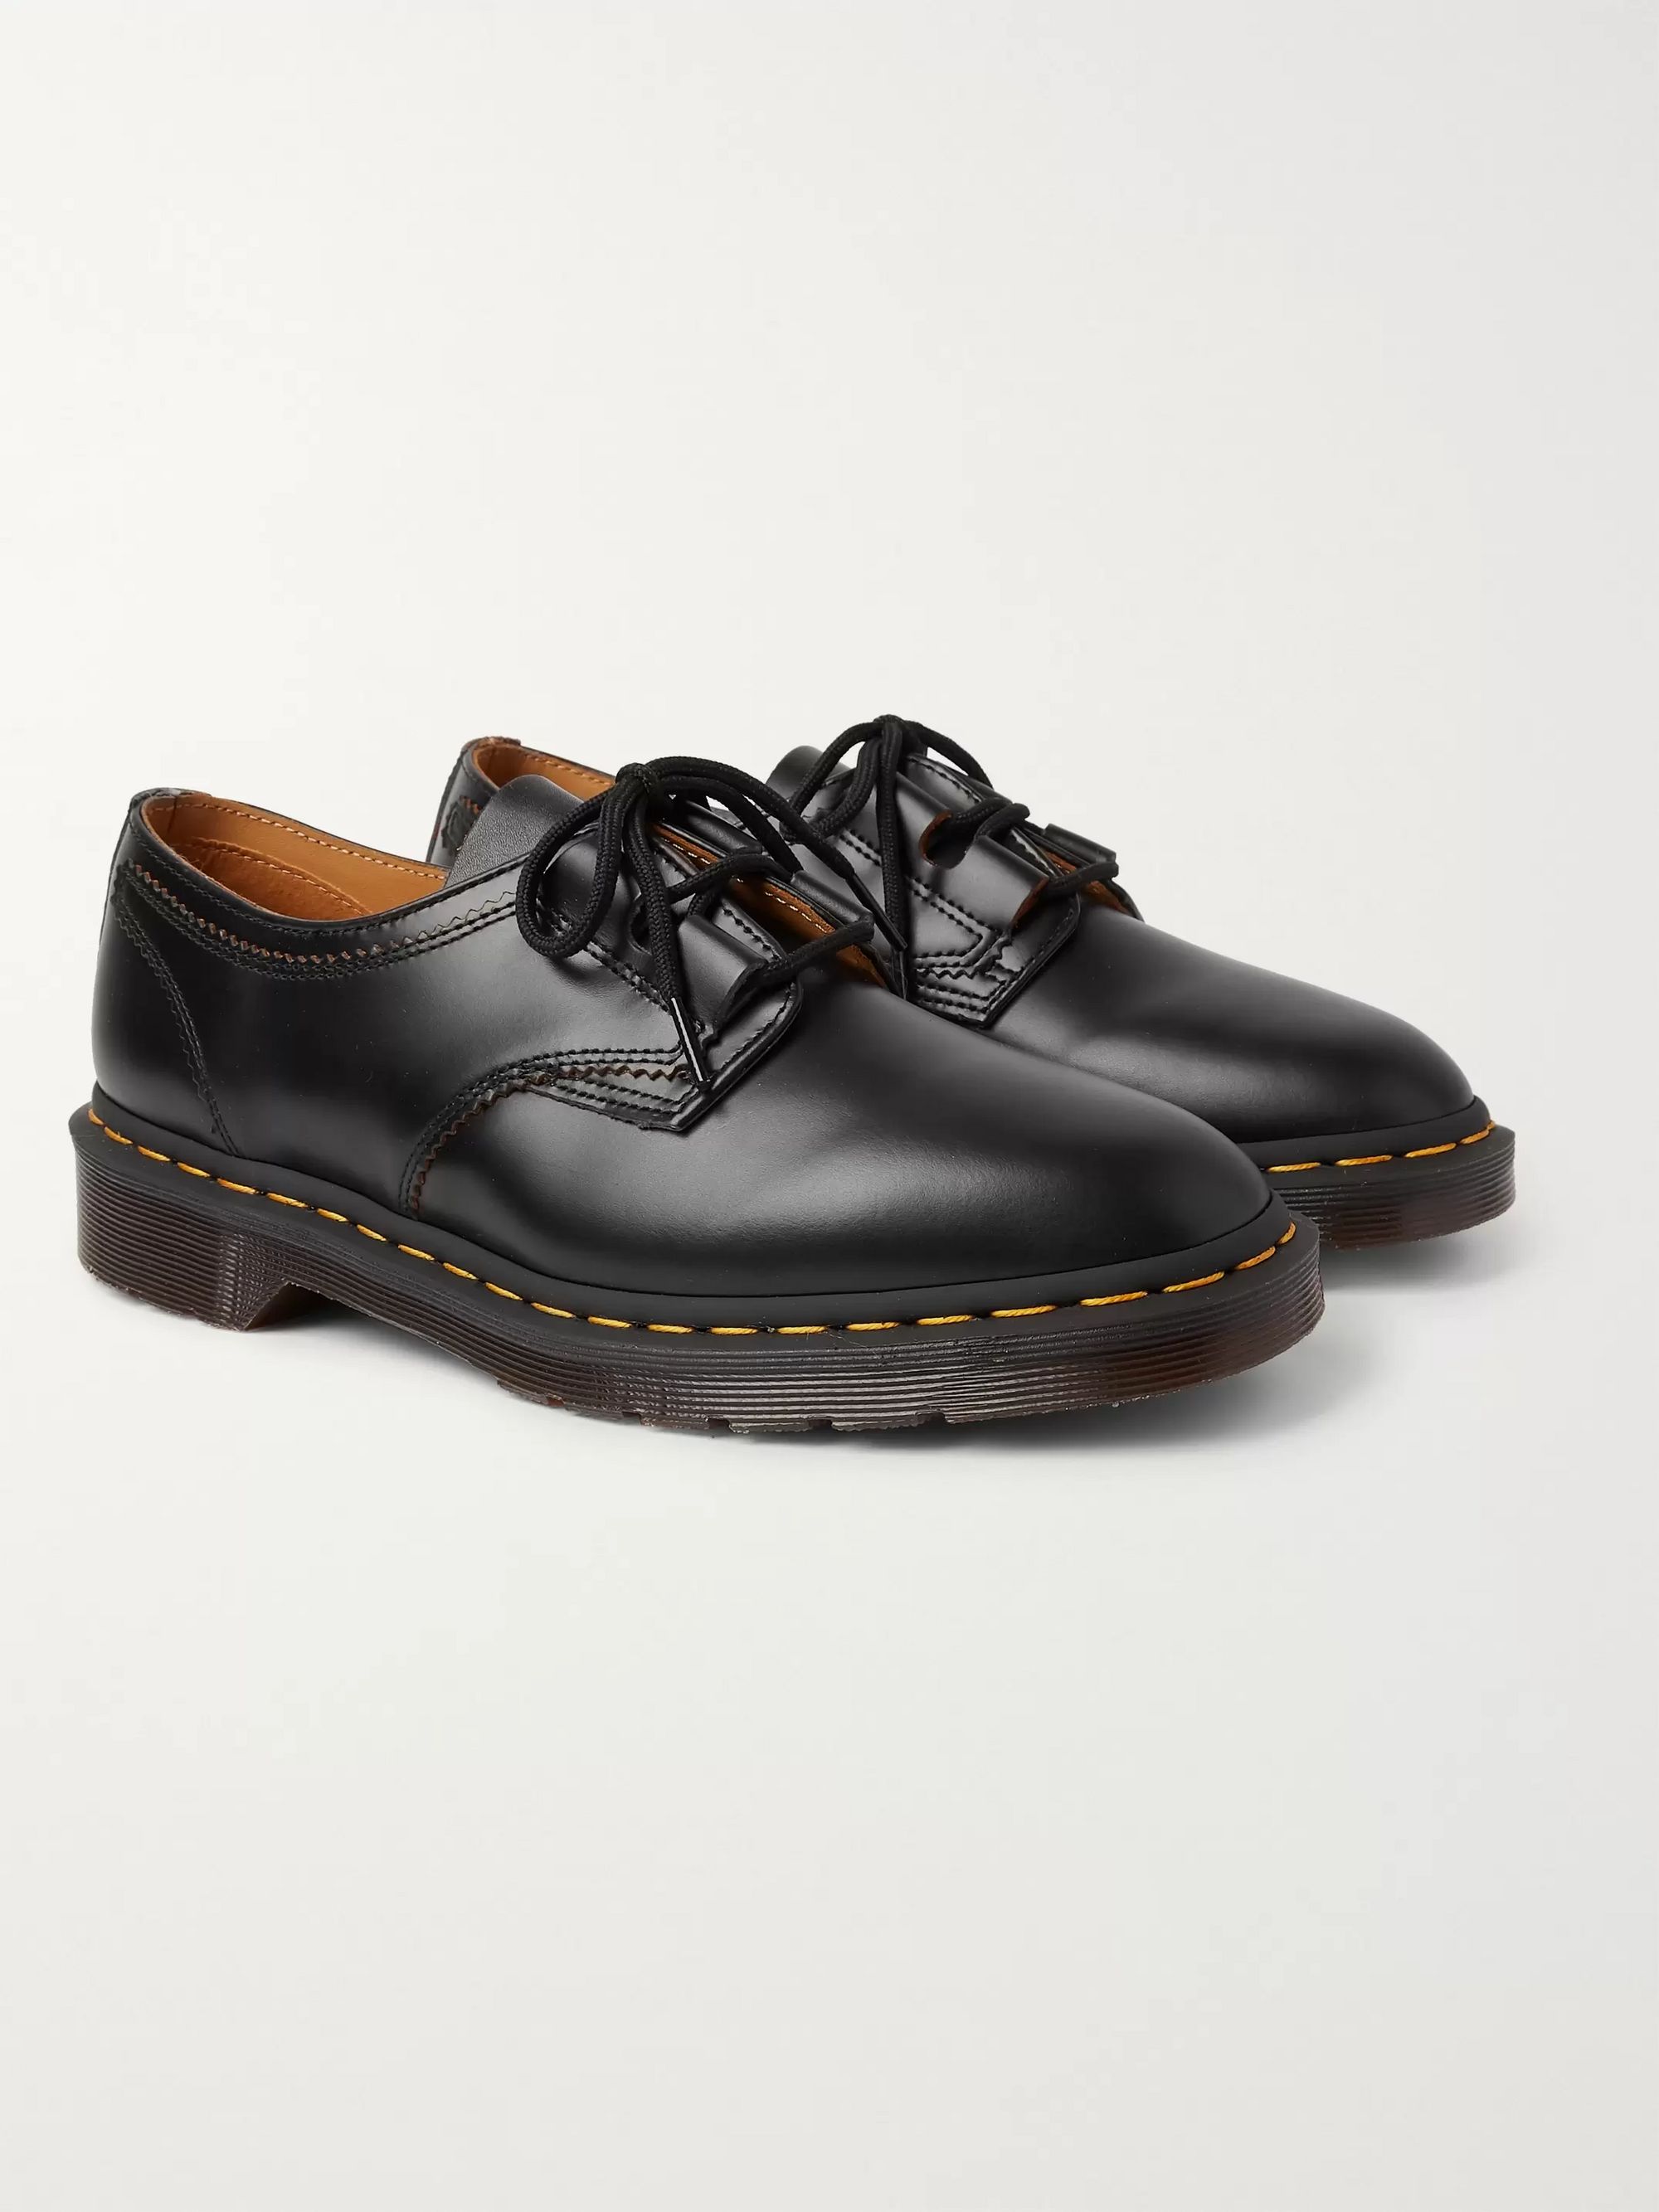 Black 1461 Ghillie Leather Derby Shoes Dr Martens Mr Porter